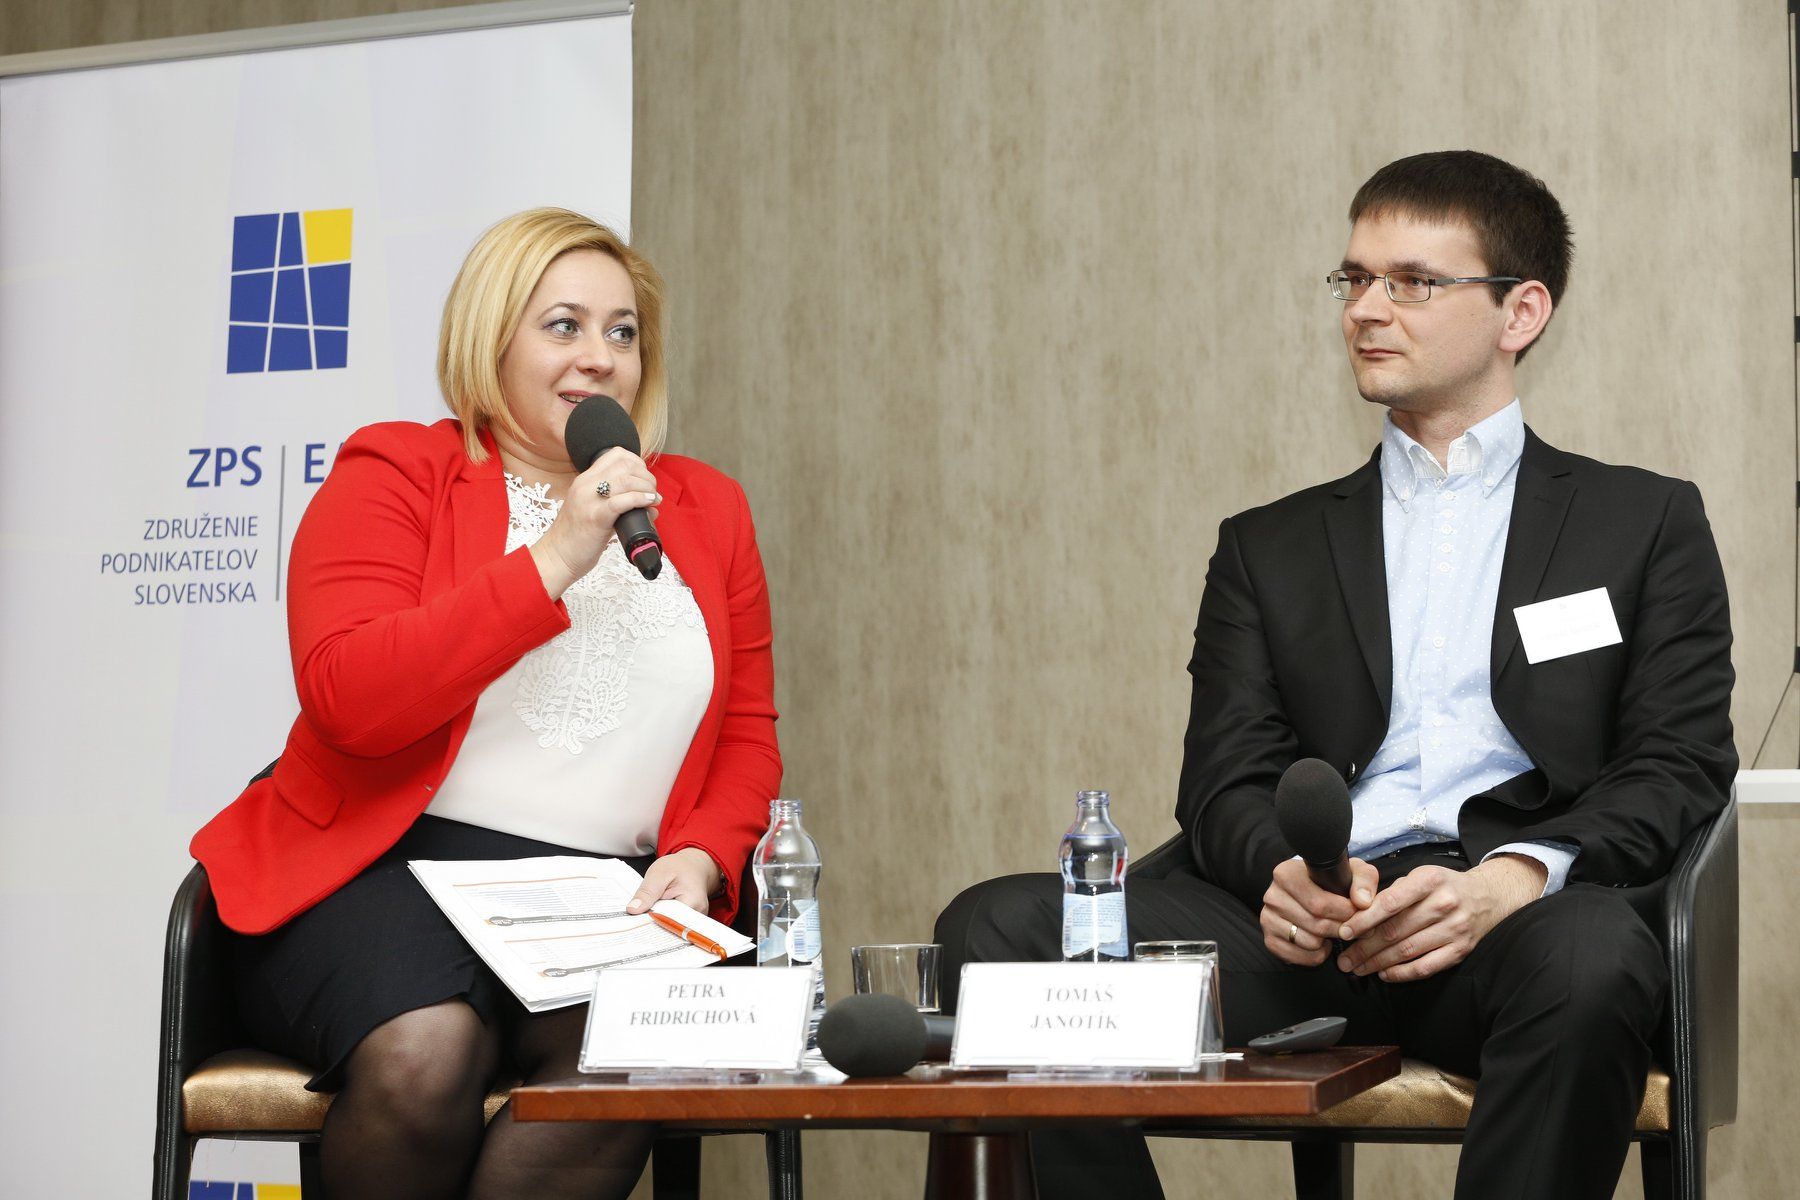 Zľava: Petra Firdirichová (To dá rozum) a Tomáš Janotík (Profesia.sk)